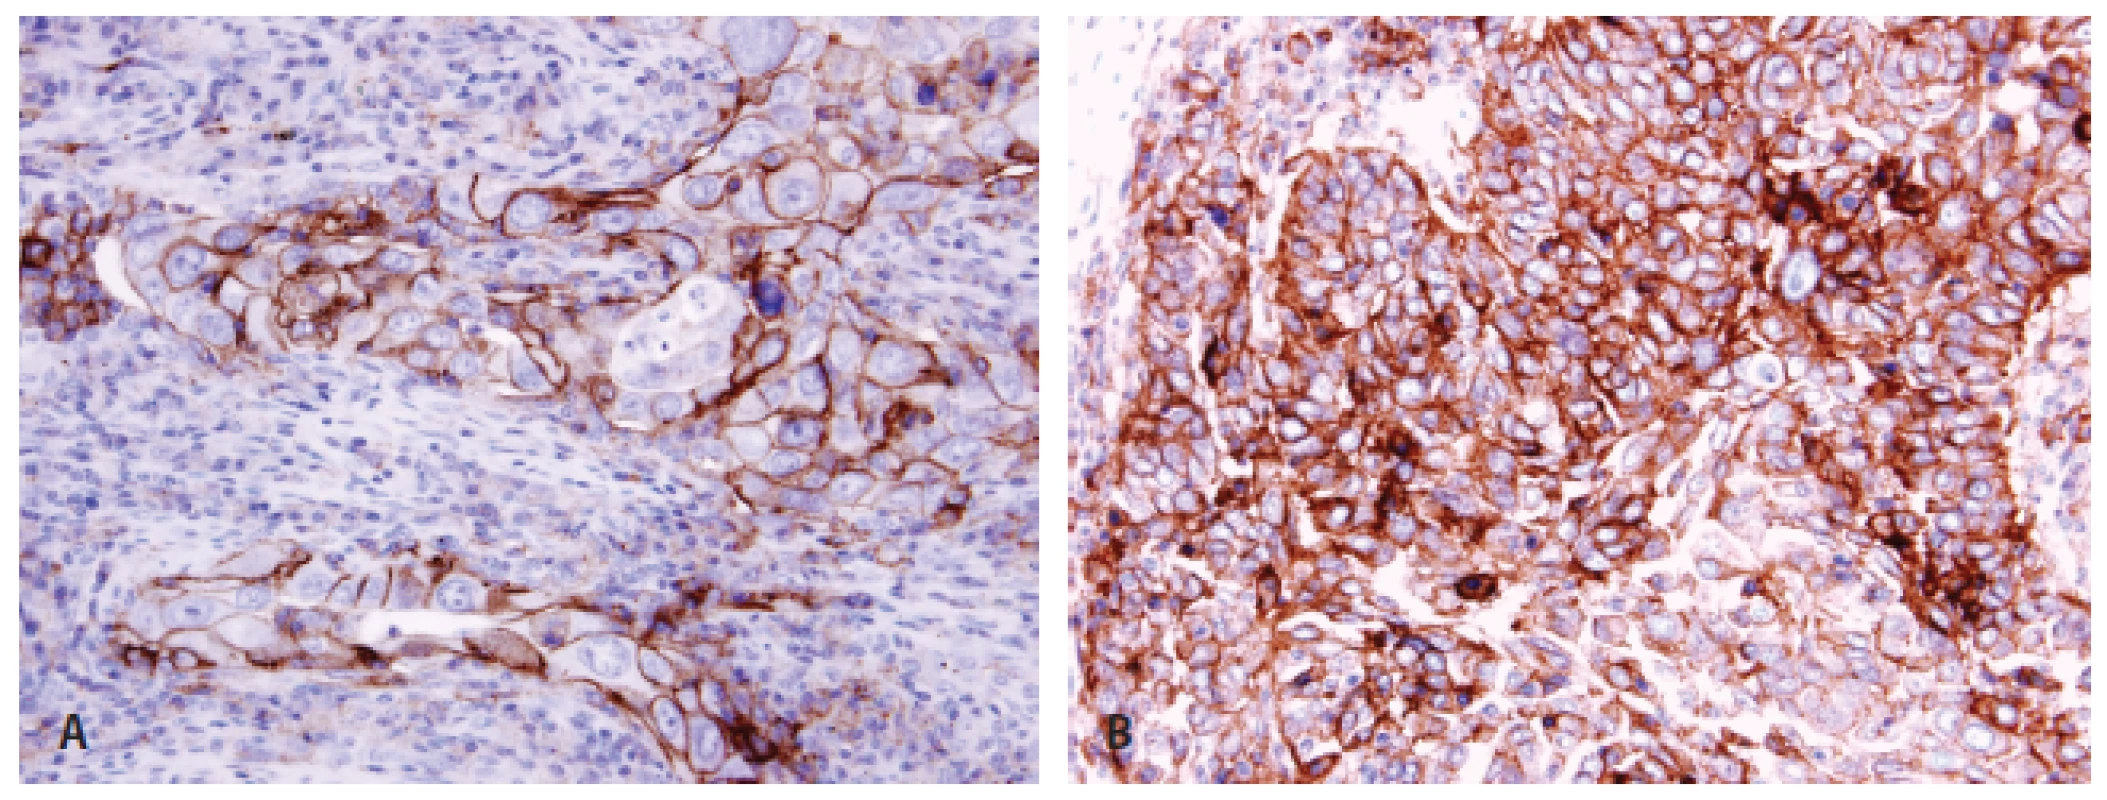 Pozitivita PD-L1 u plicního adenokarcinomu &lt;b&gt;(A)&lt;/b&gt; a dlaždicobuněčného karcinomu &lt;b&gt;(B)&lt;/b&gt; imunohistochemicky protilátkou klonu 22C3.